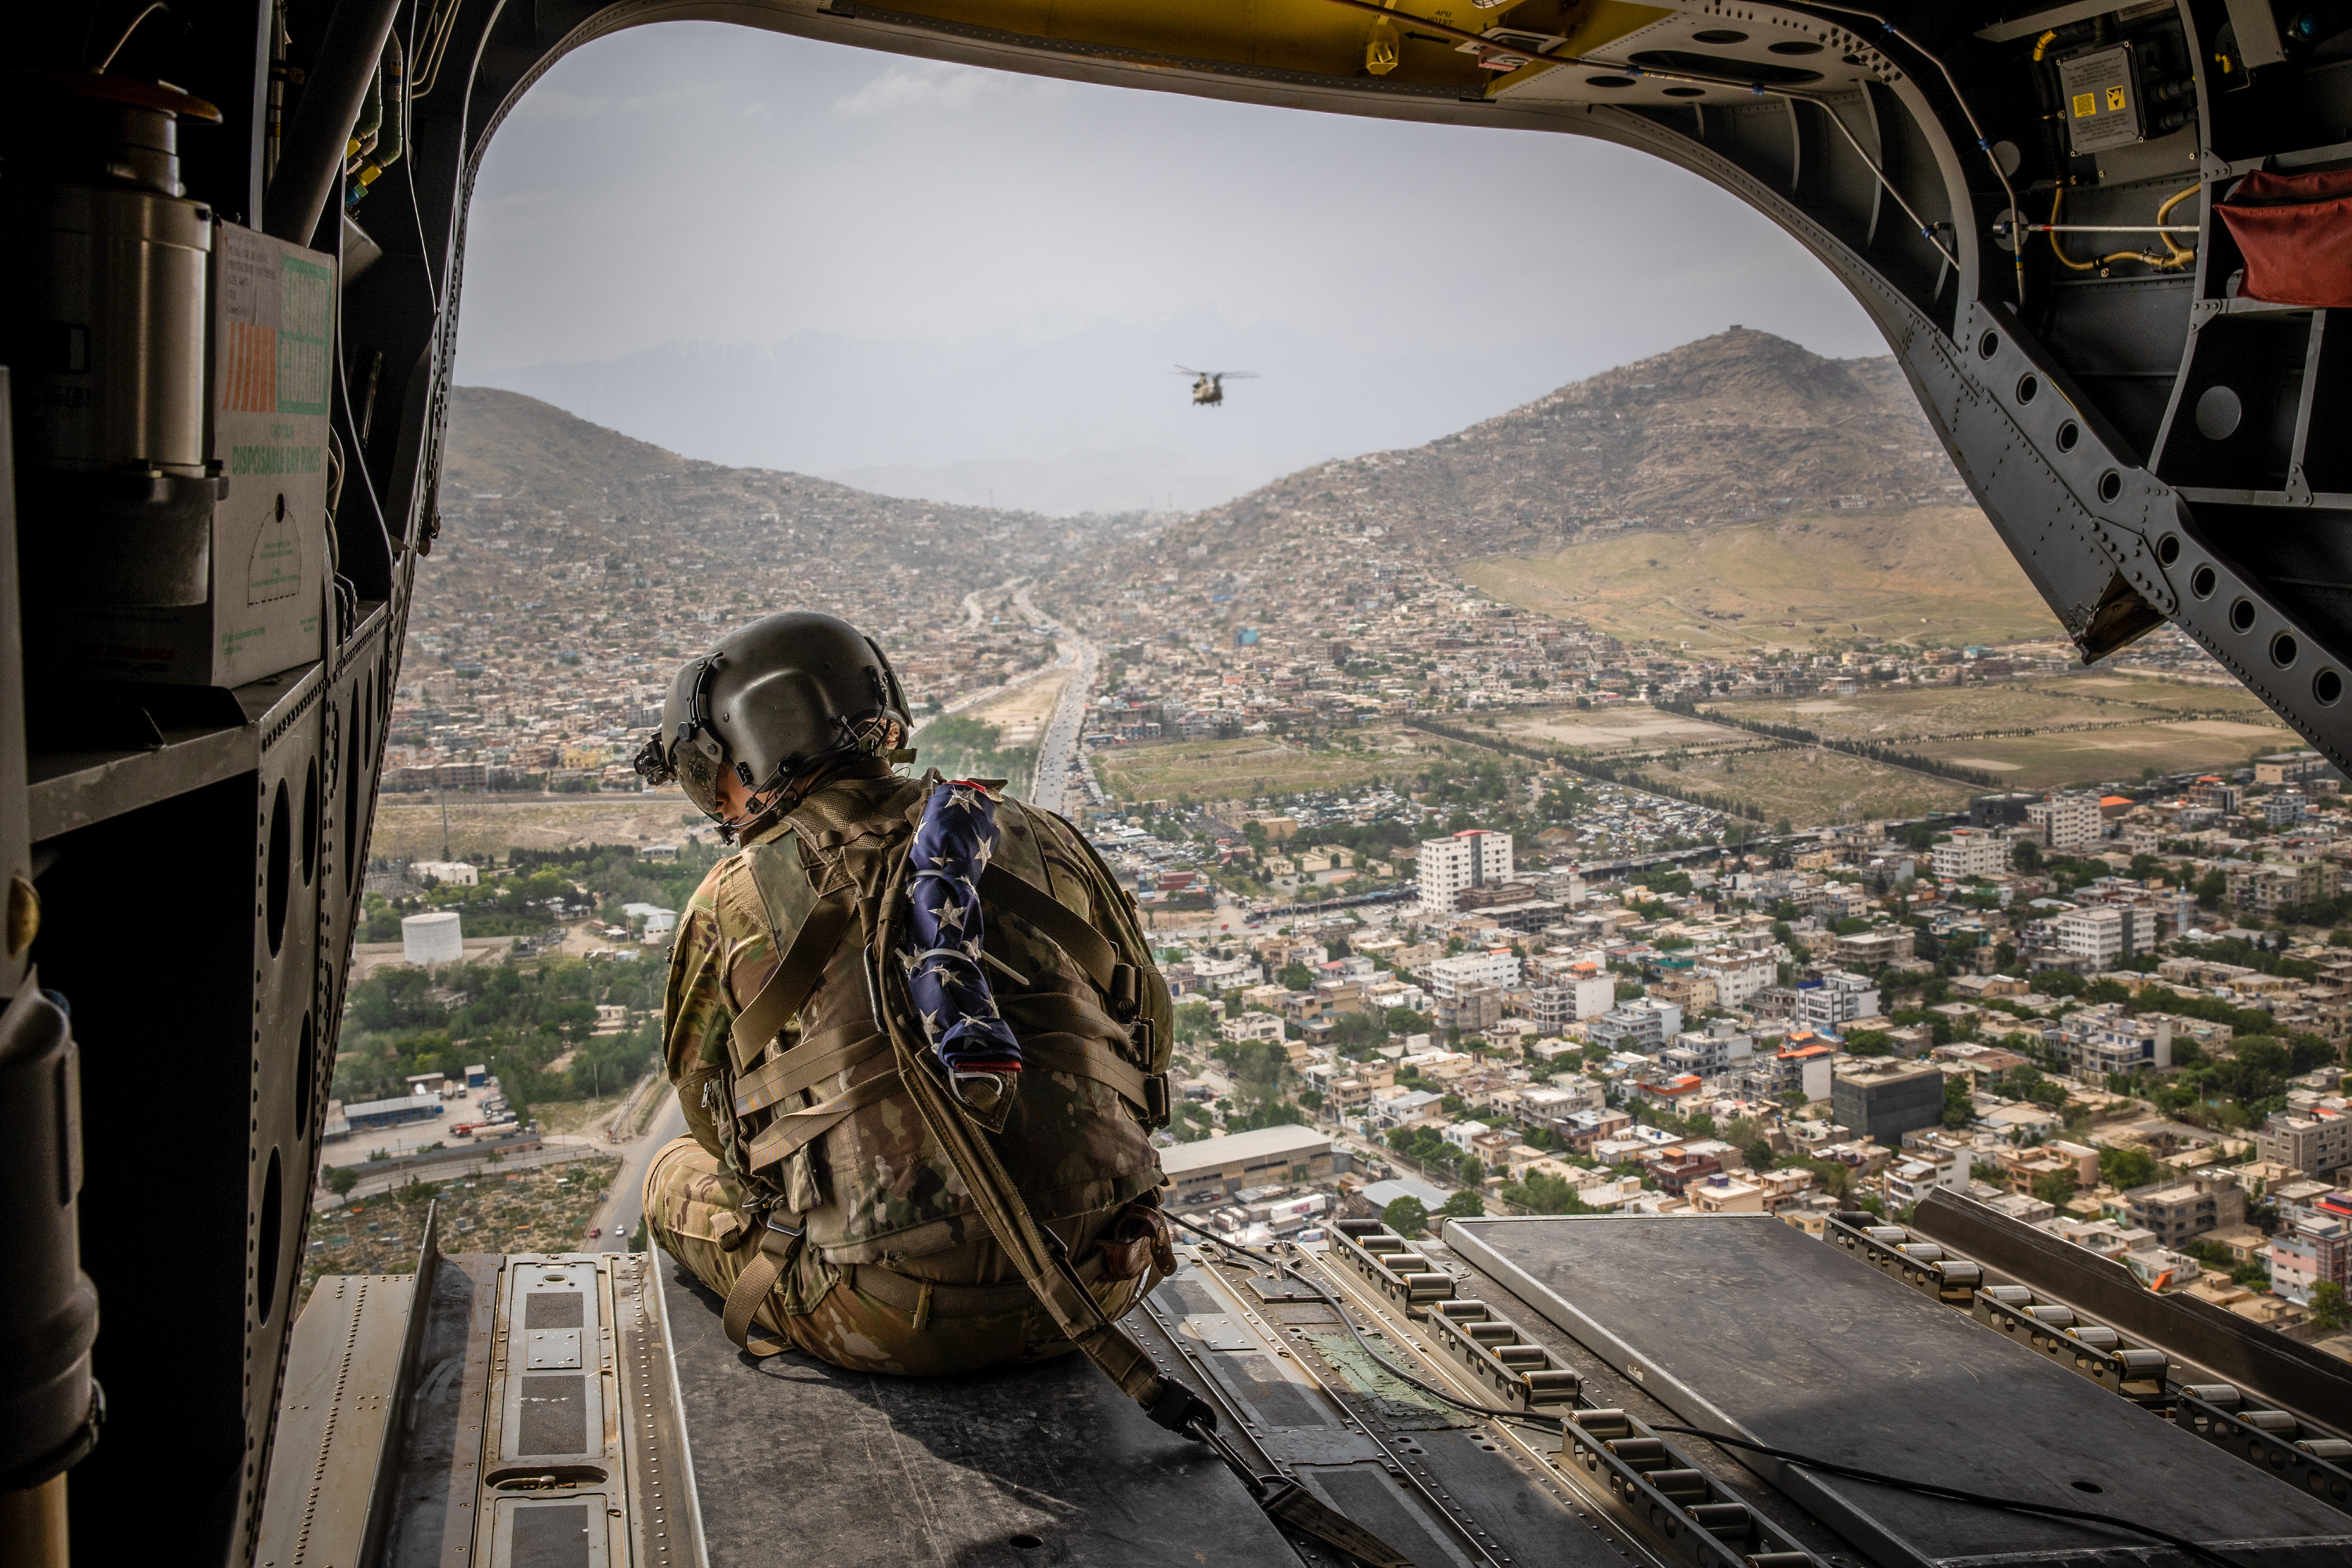 Un soldado estadounidense en un helicóptero sobre Kabul, Afganistán, el 2 de mayo de 2021 (Foto Prensa Libre: Jim Huylebroek / The New York Times).